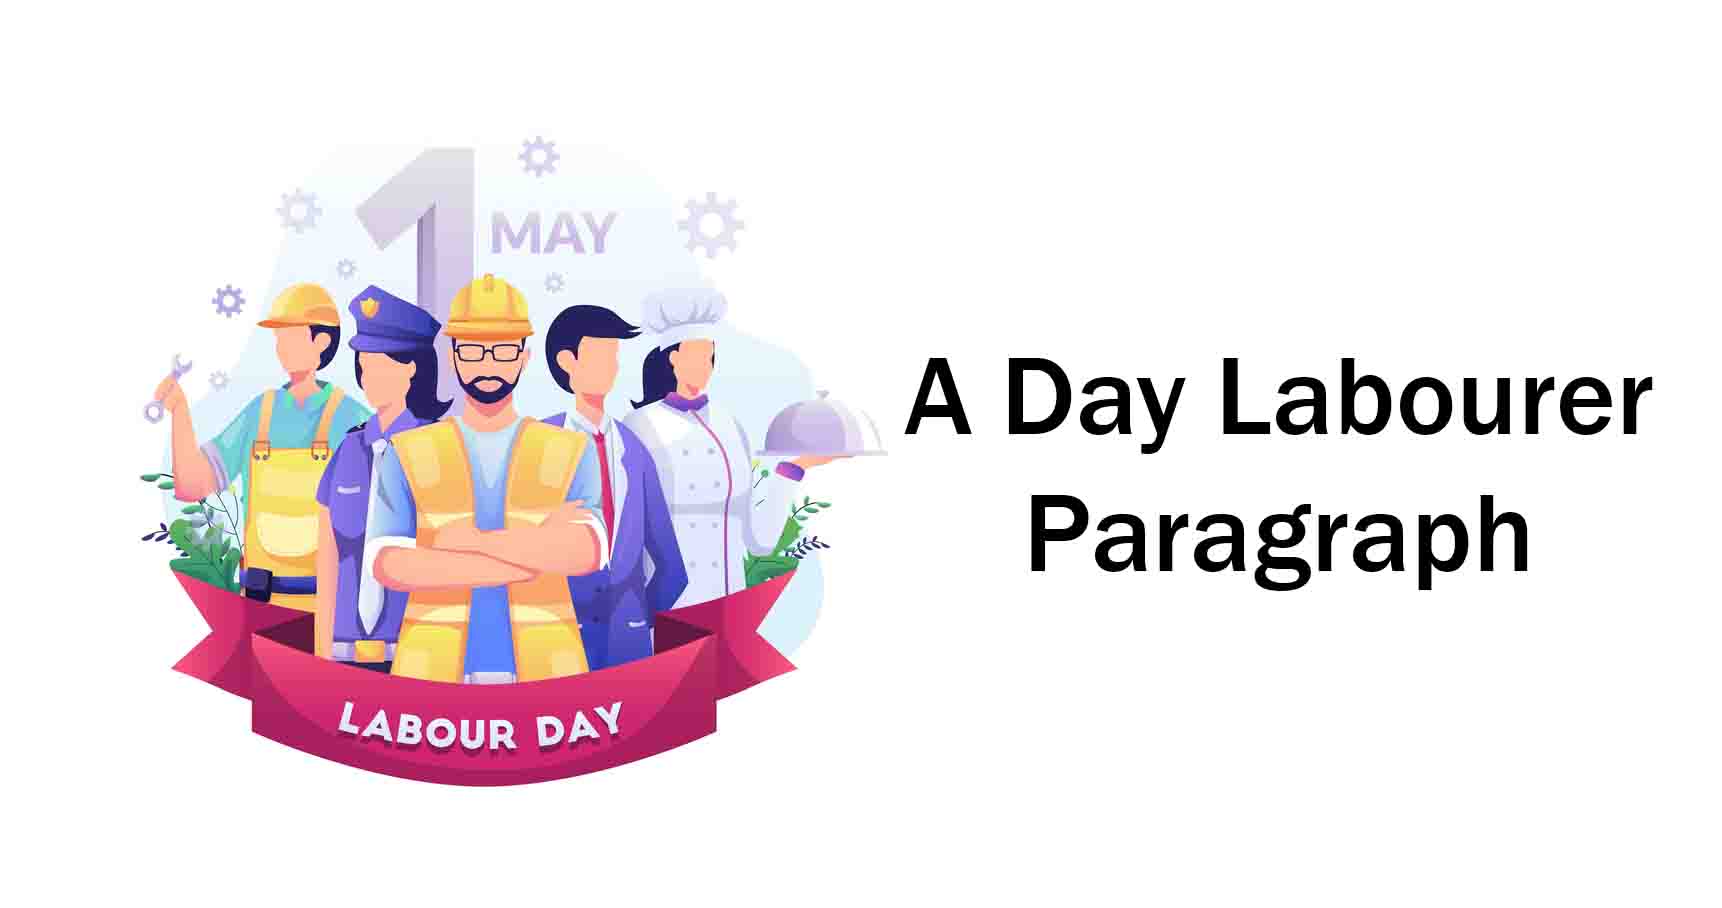 a day labourer essay paragraph